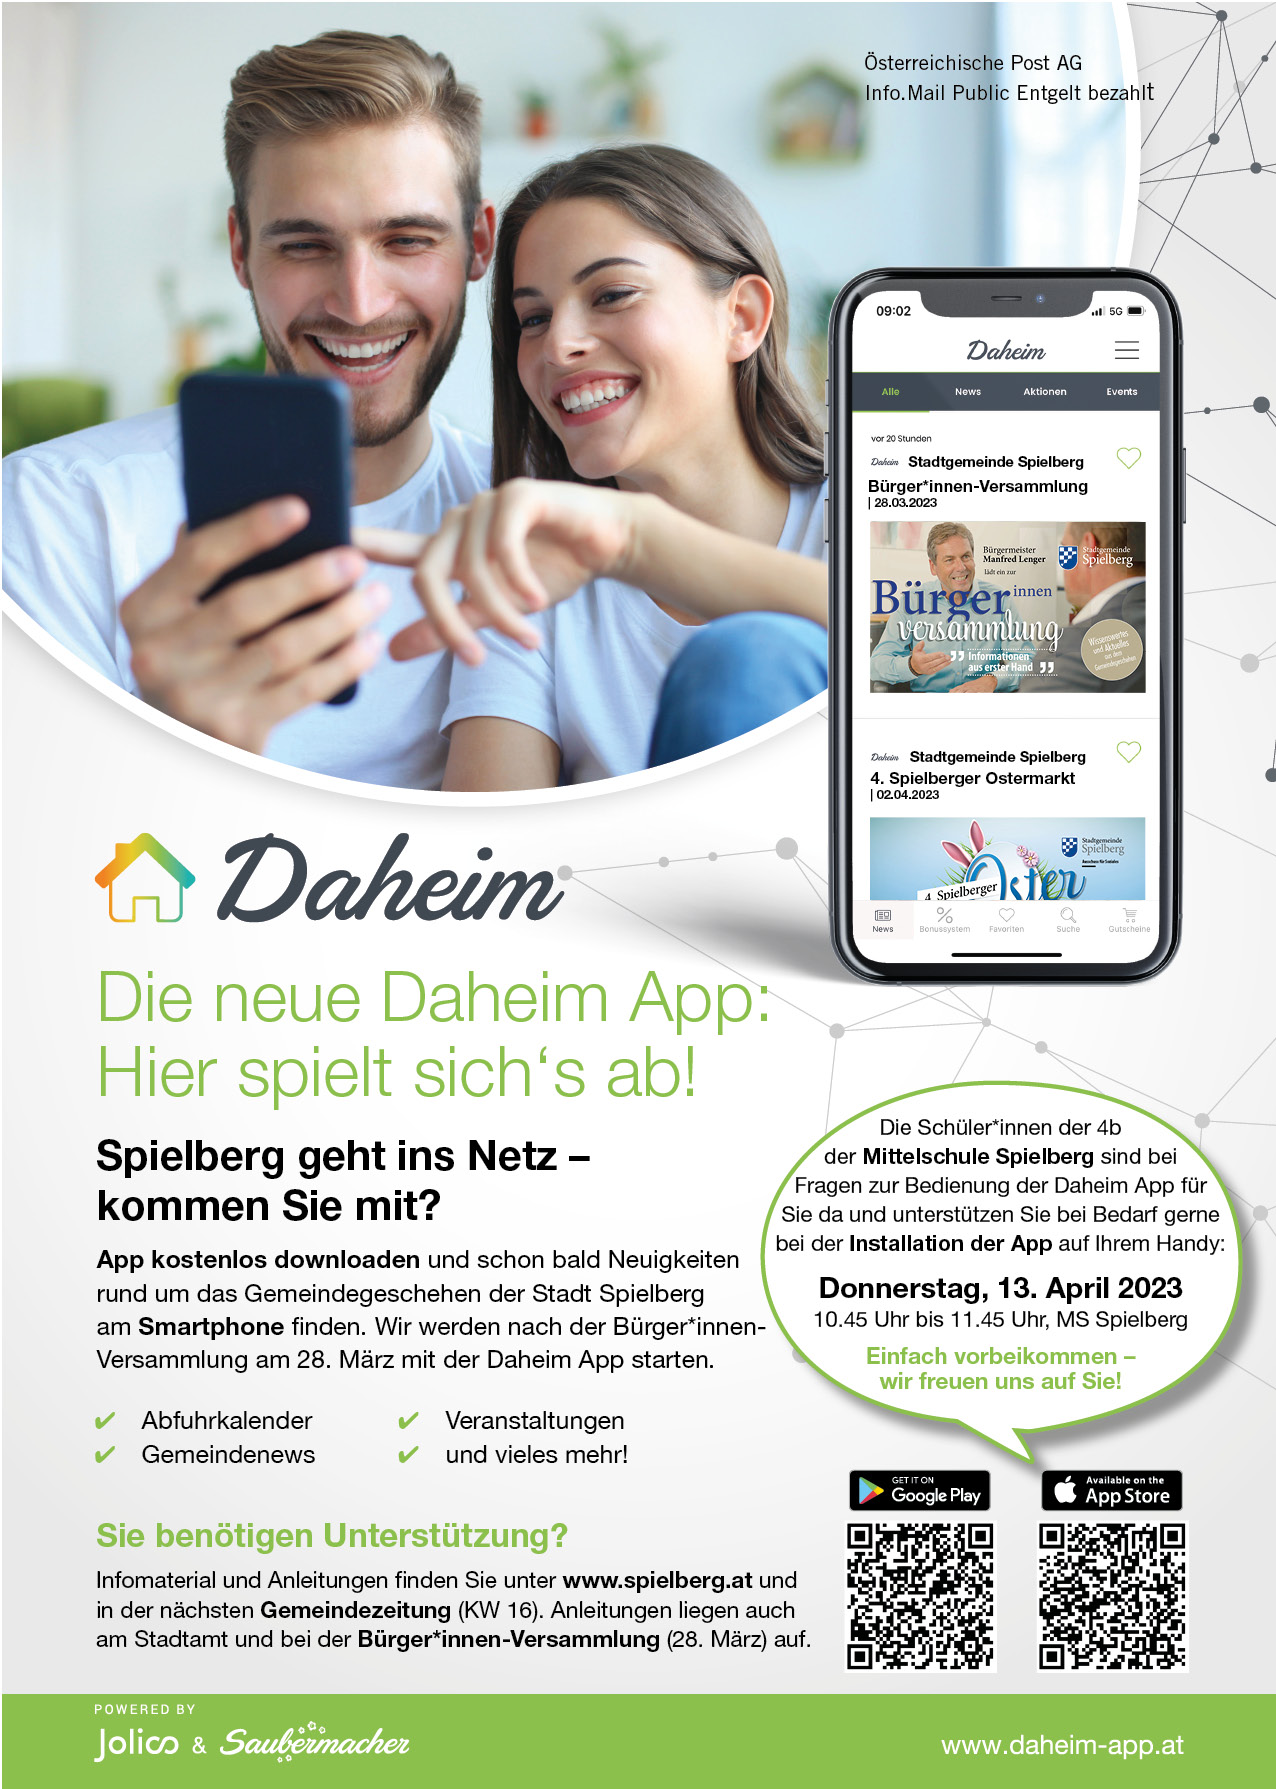 Die neue Daheim App - wir legen nun los!